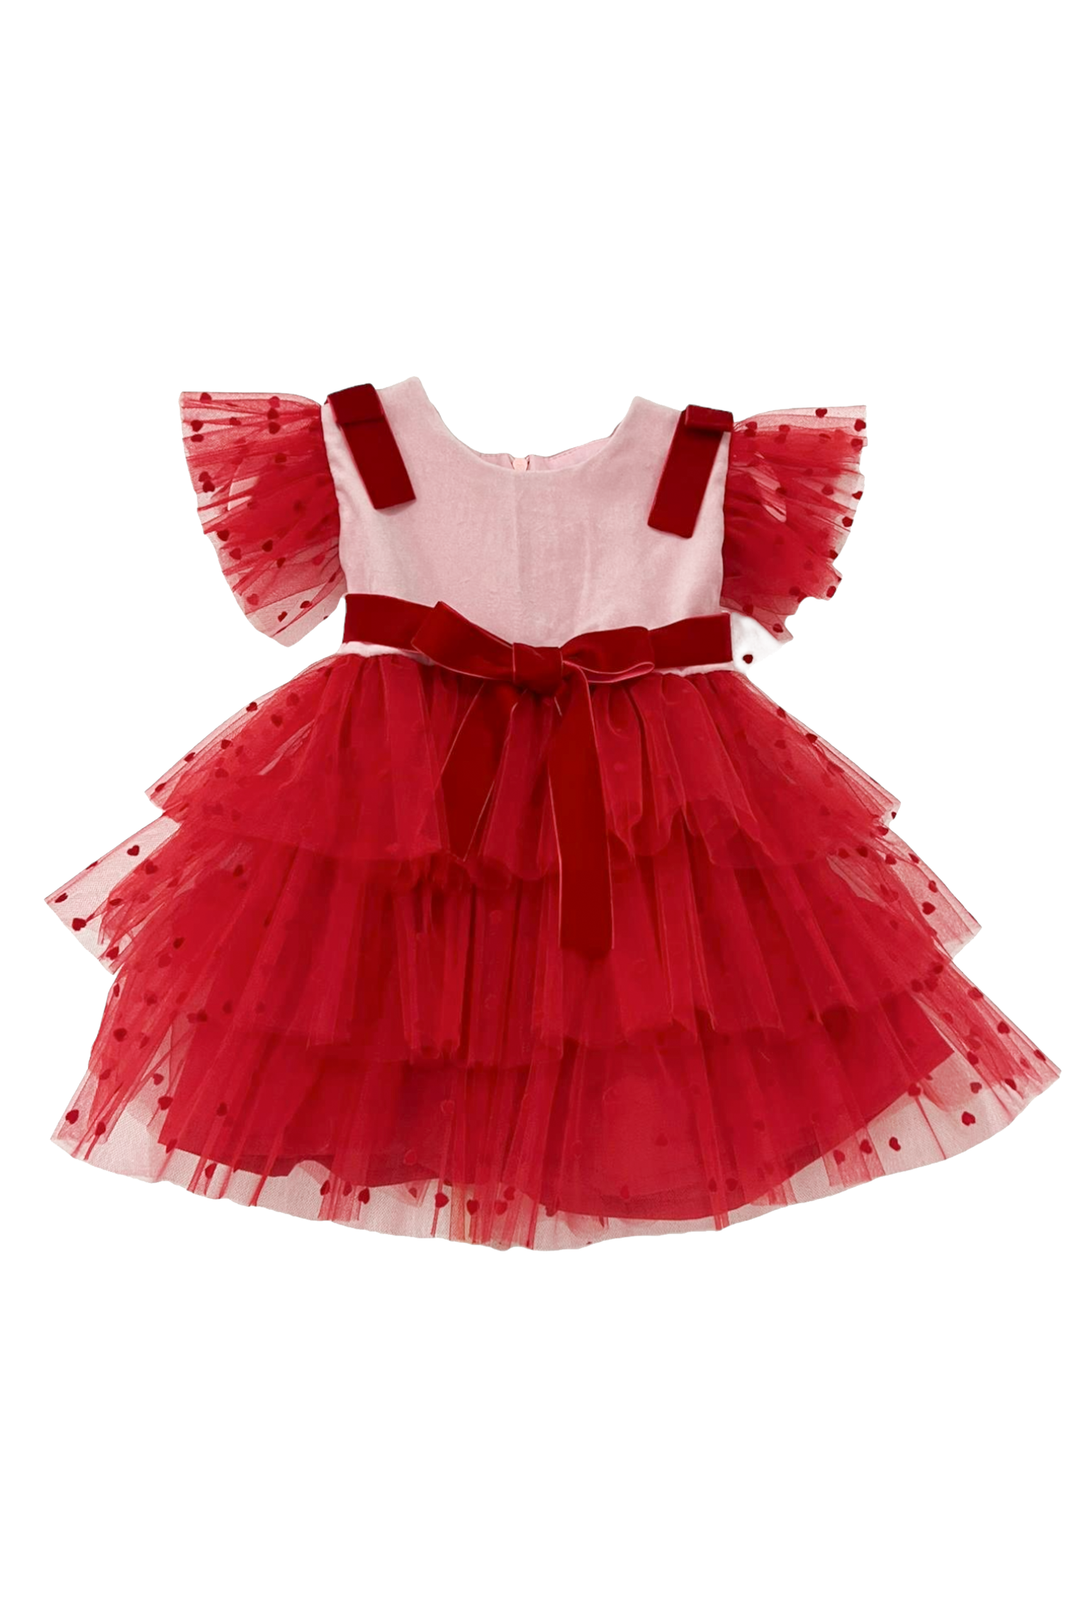 Phi "Amora" Pink & Red Velvet Tulle Dress | Millie and John